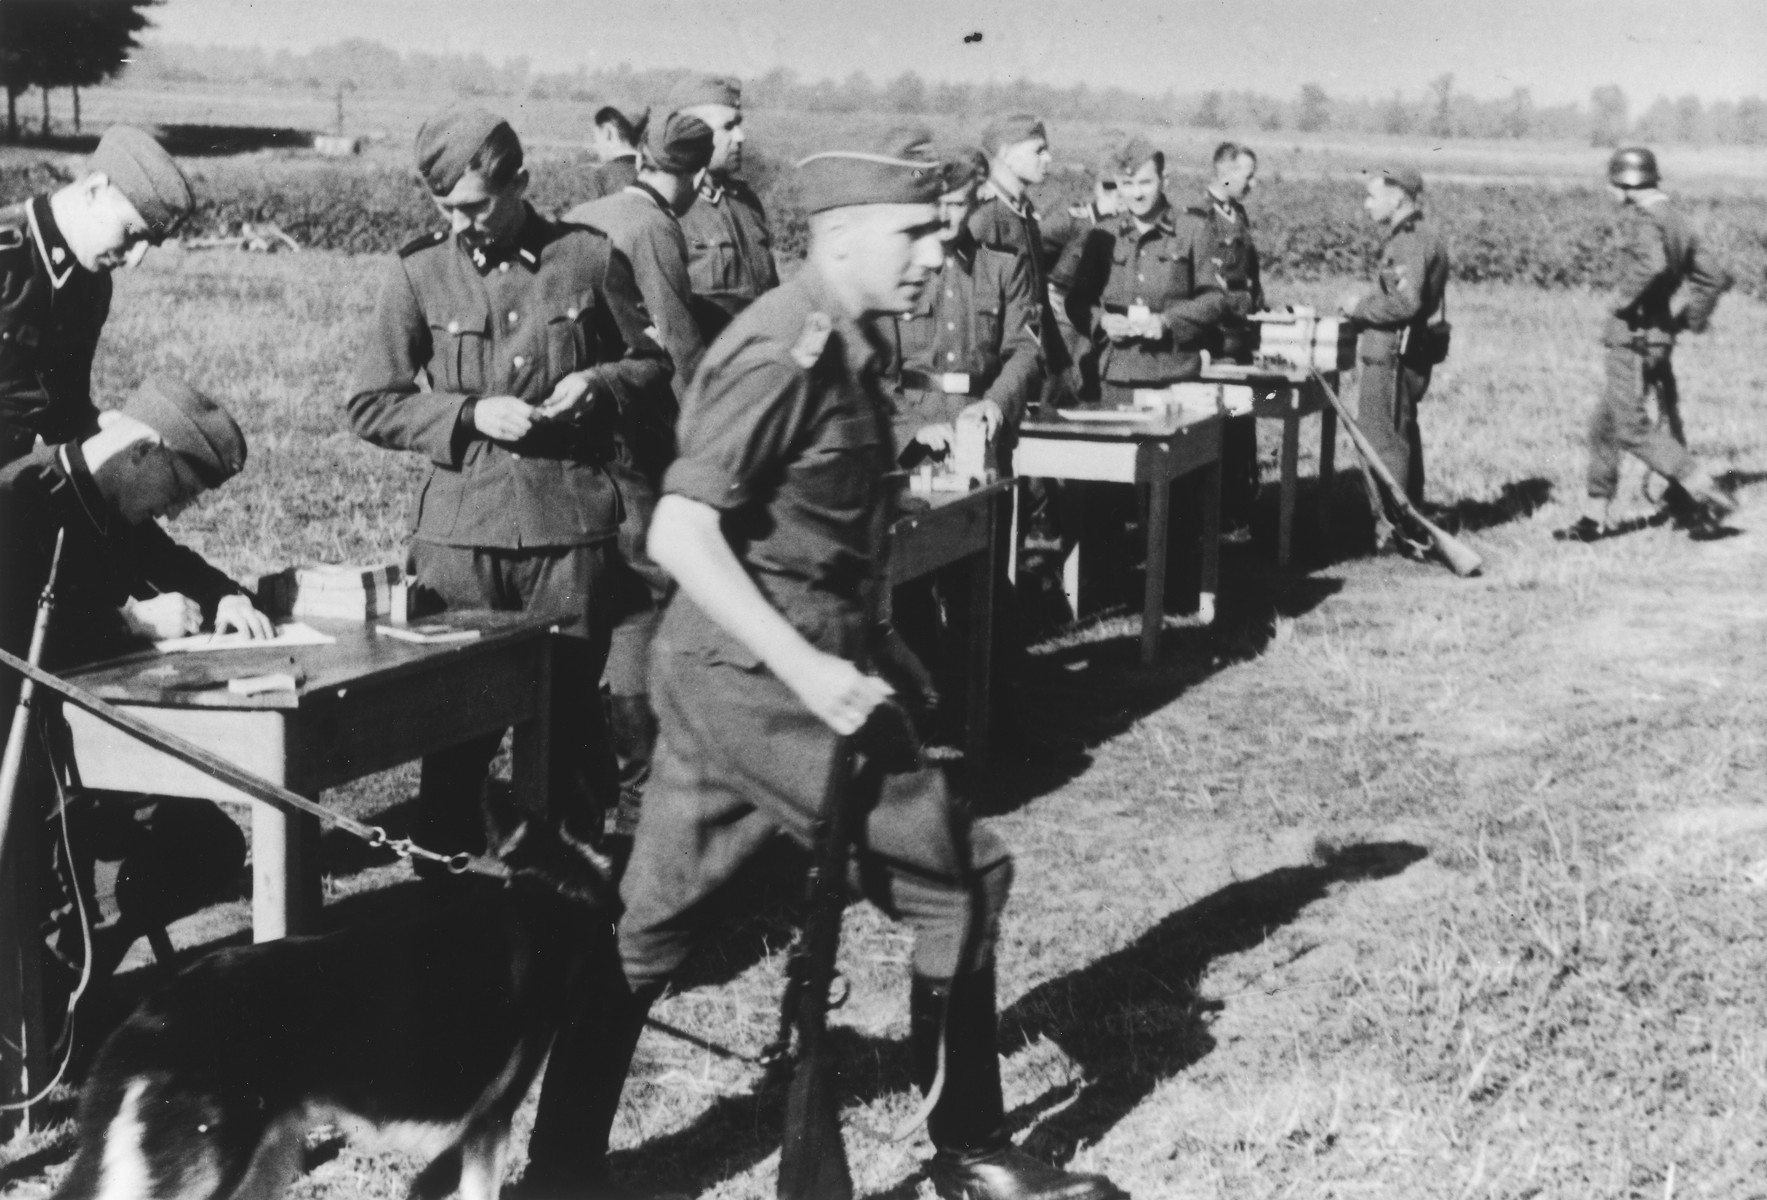 German troops gather for target practice.

Karl Hoecker is in the foreground.

The original caption reads "Der Schuss wurde eine 12" (the shot was a 12).